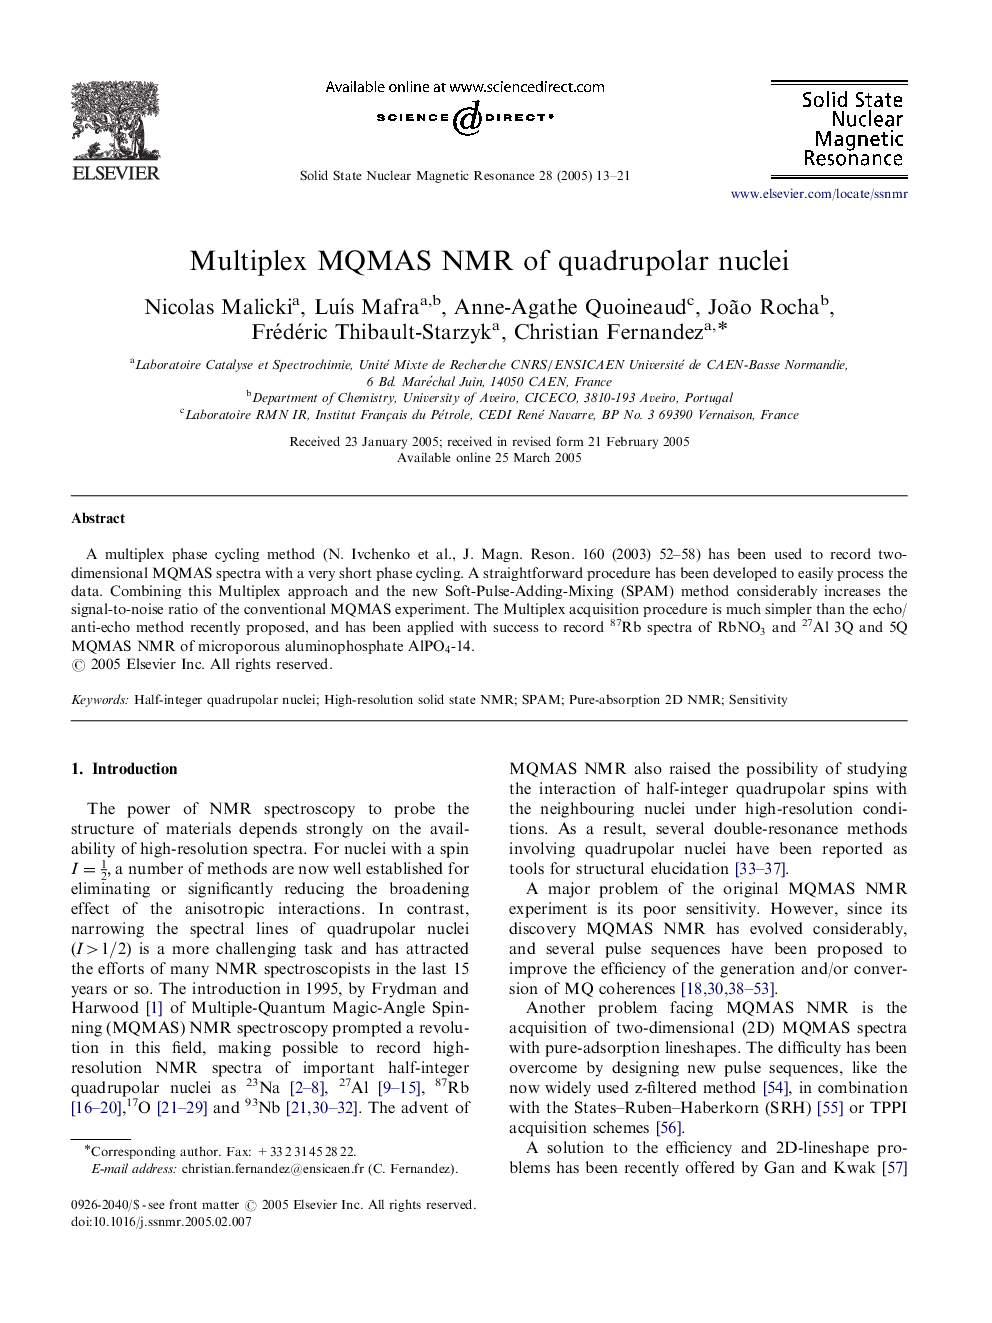 Multiplex MQMAS NMR of quadrupolar nuclei